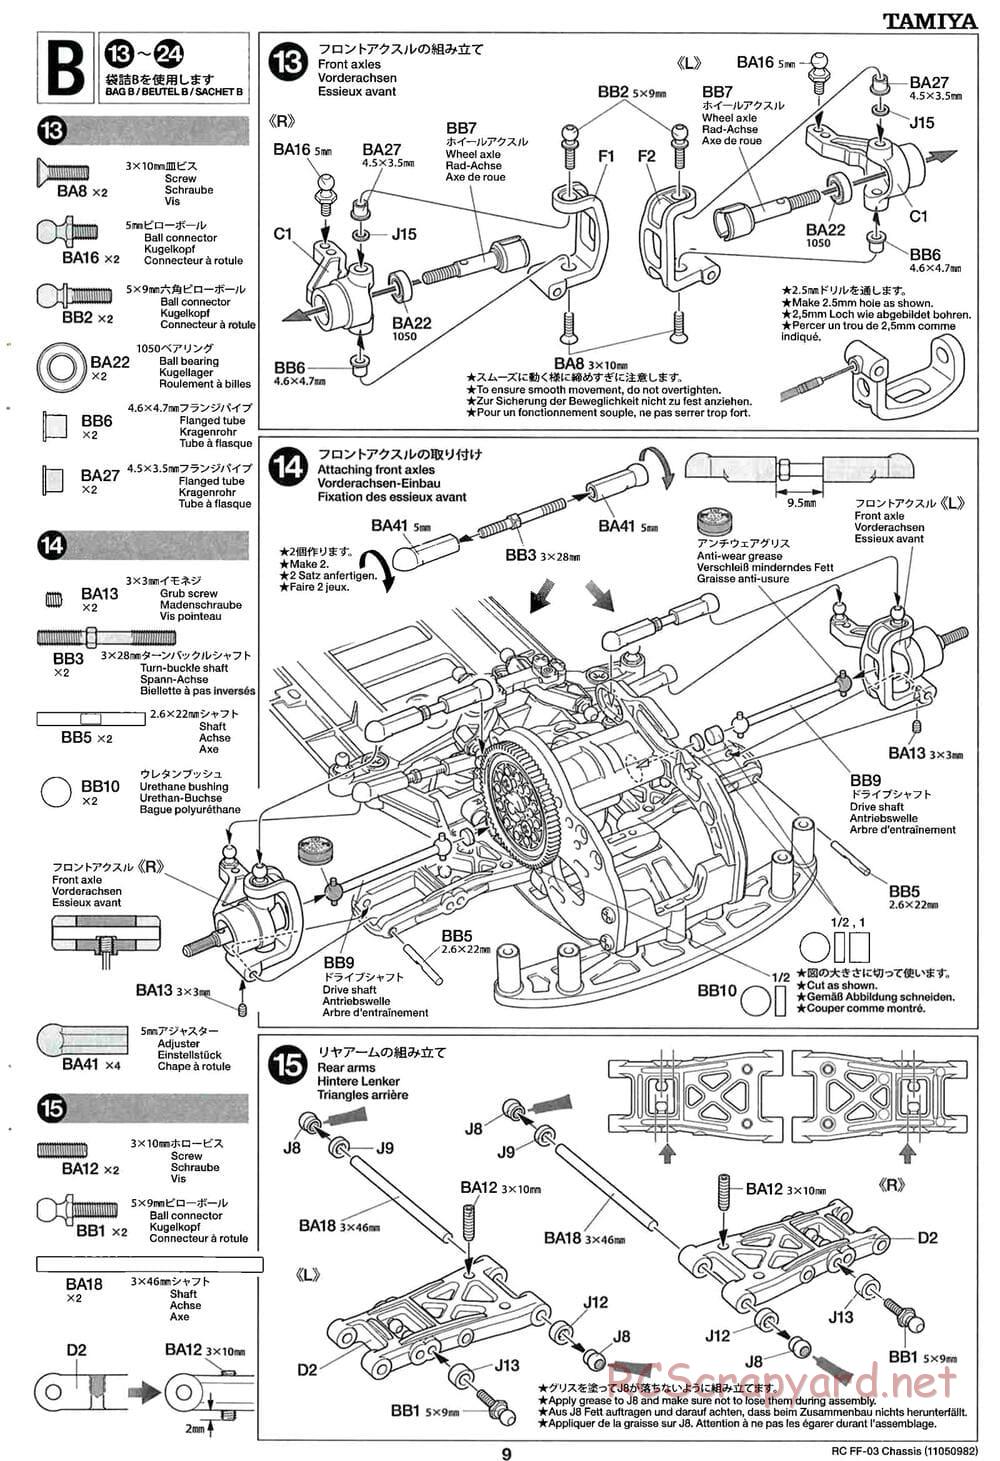 Tamiya - Honda Accord Aero Custom - FF-03 Chassis - Manual - Page 9